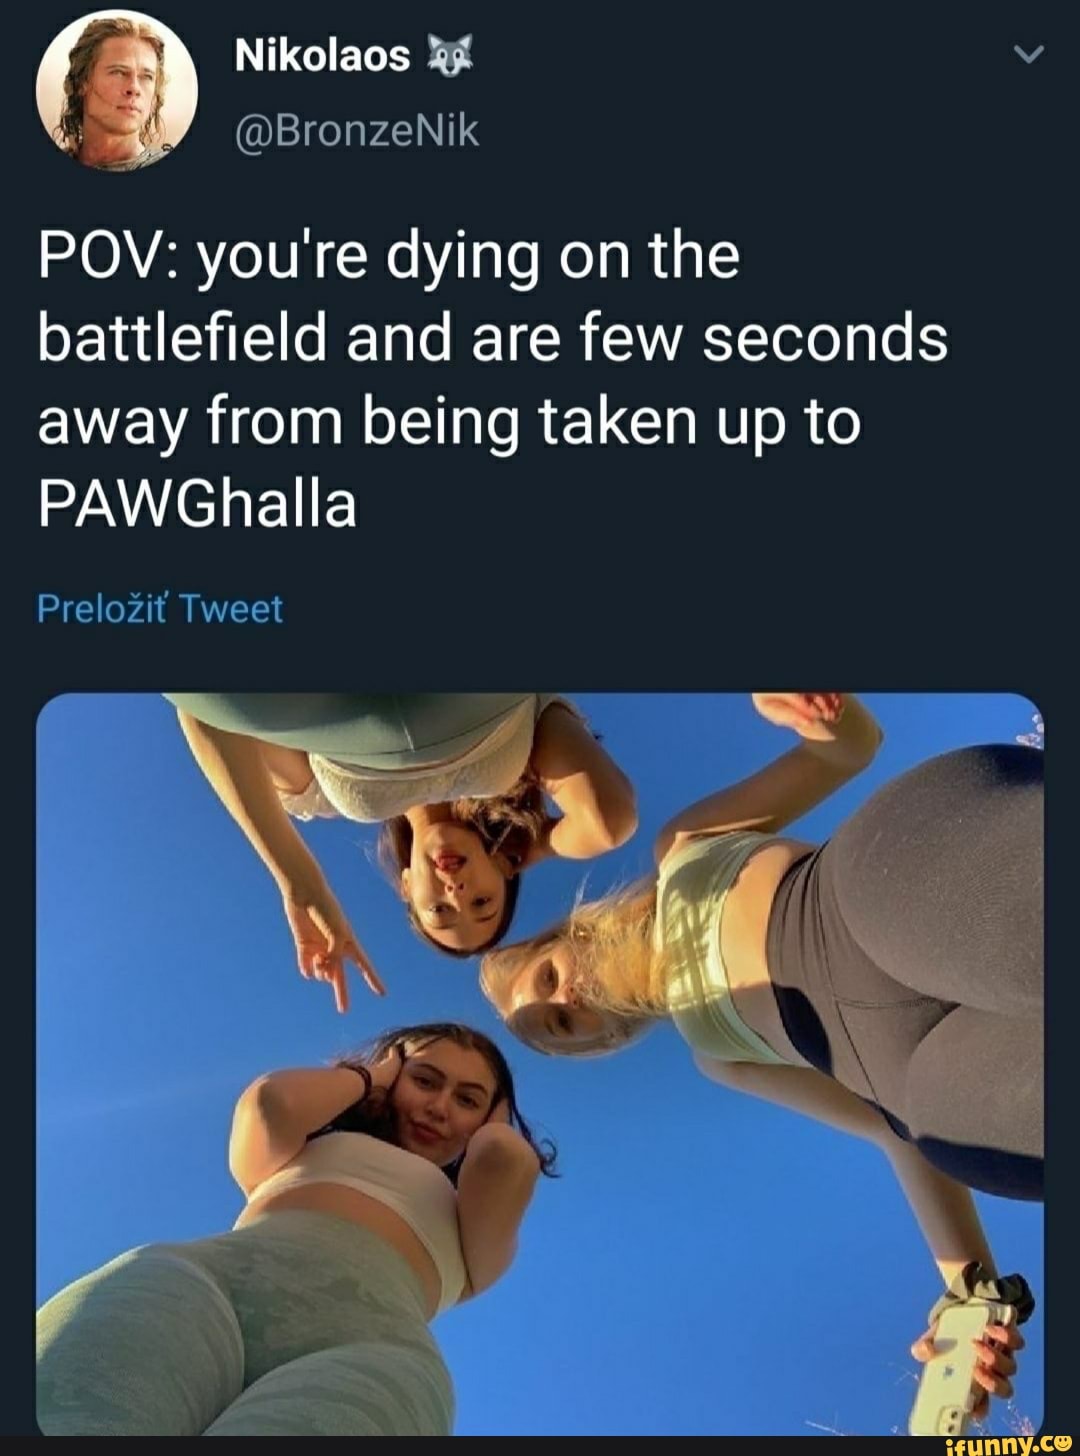 Pawghalla